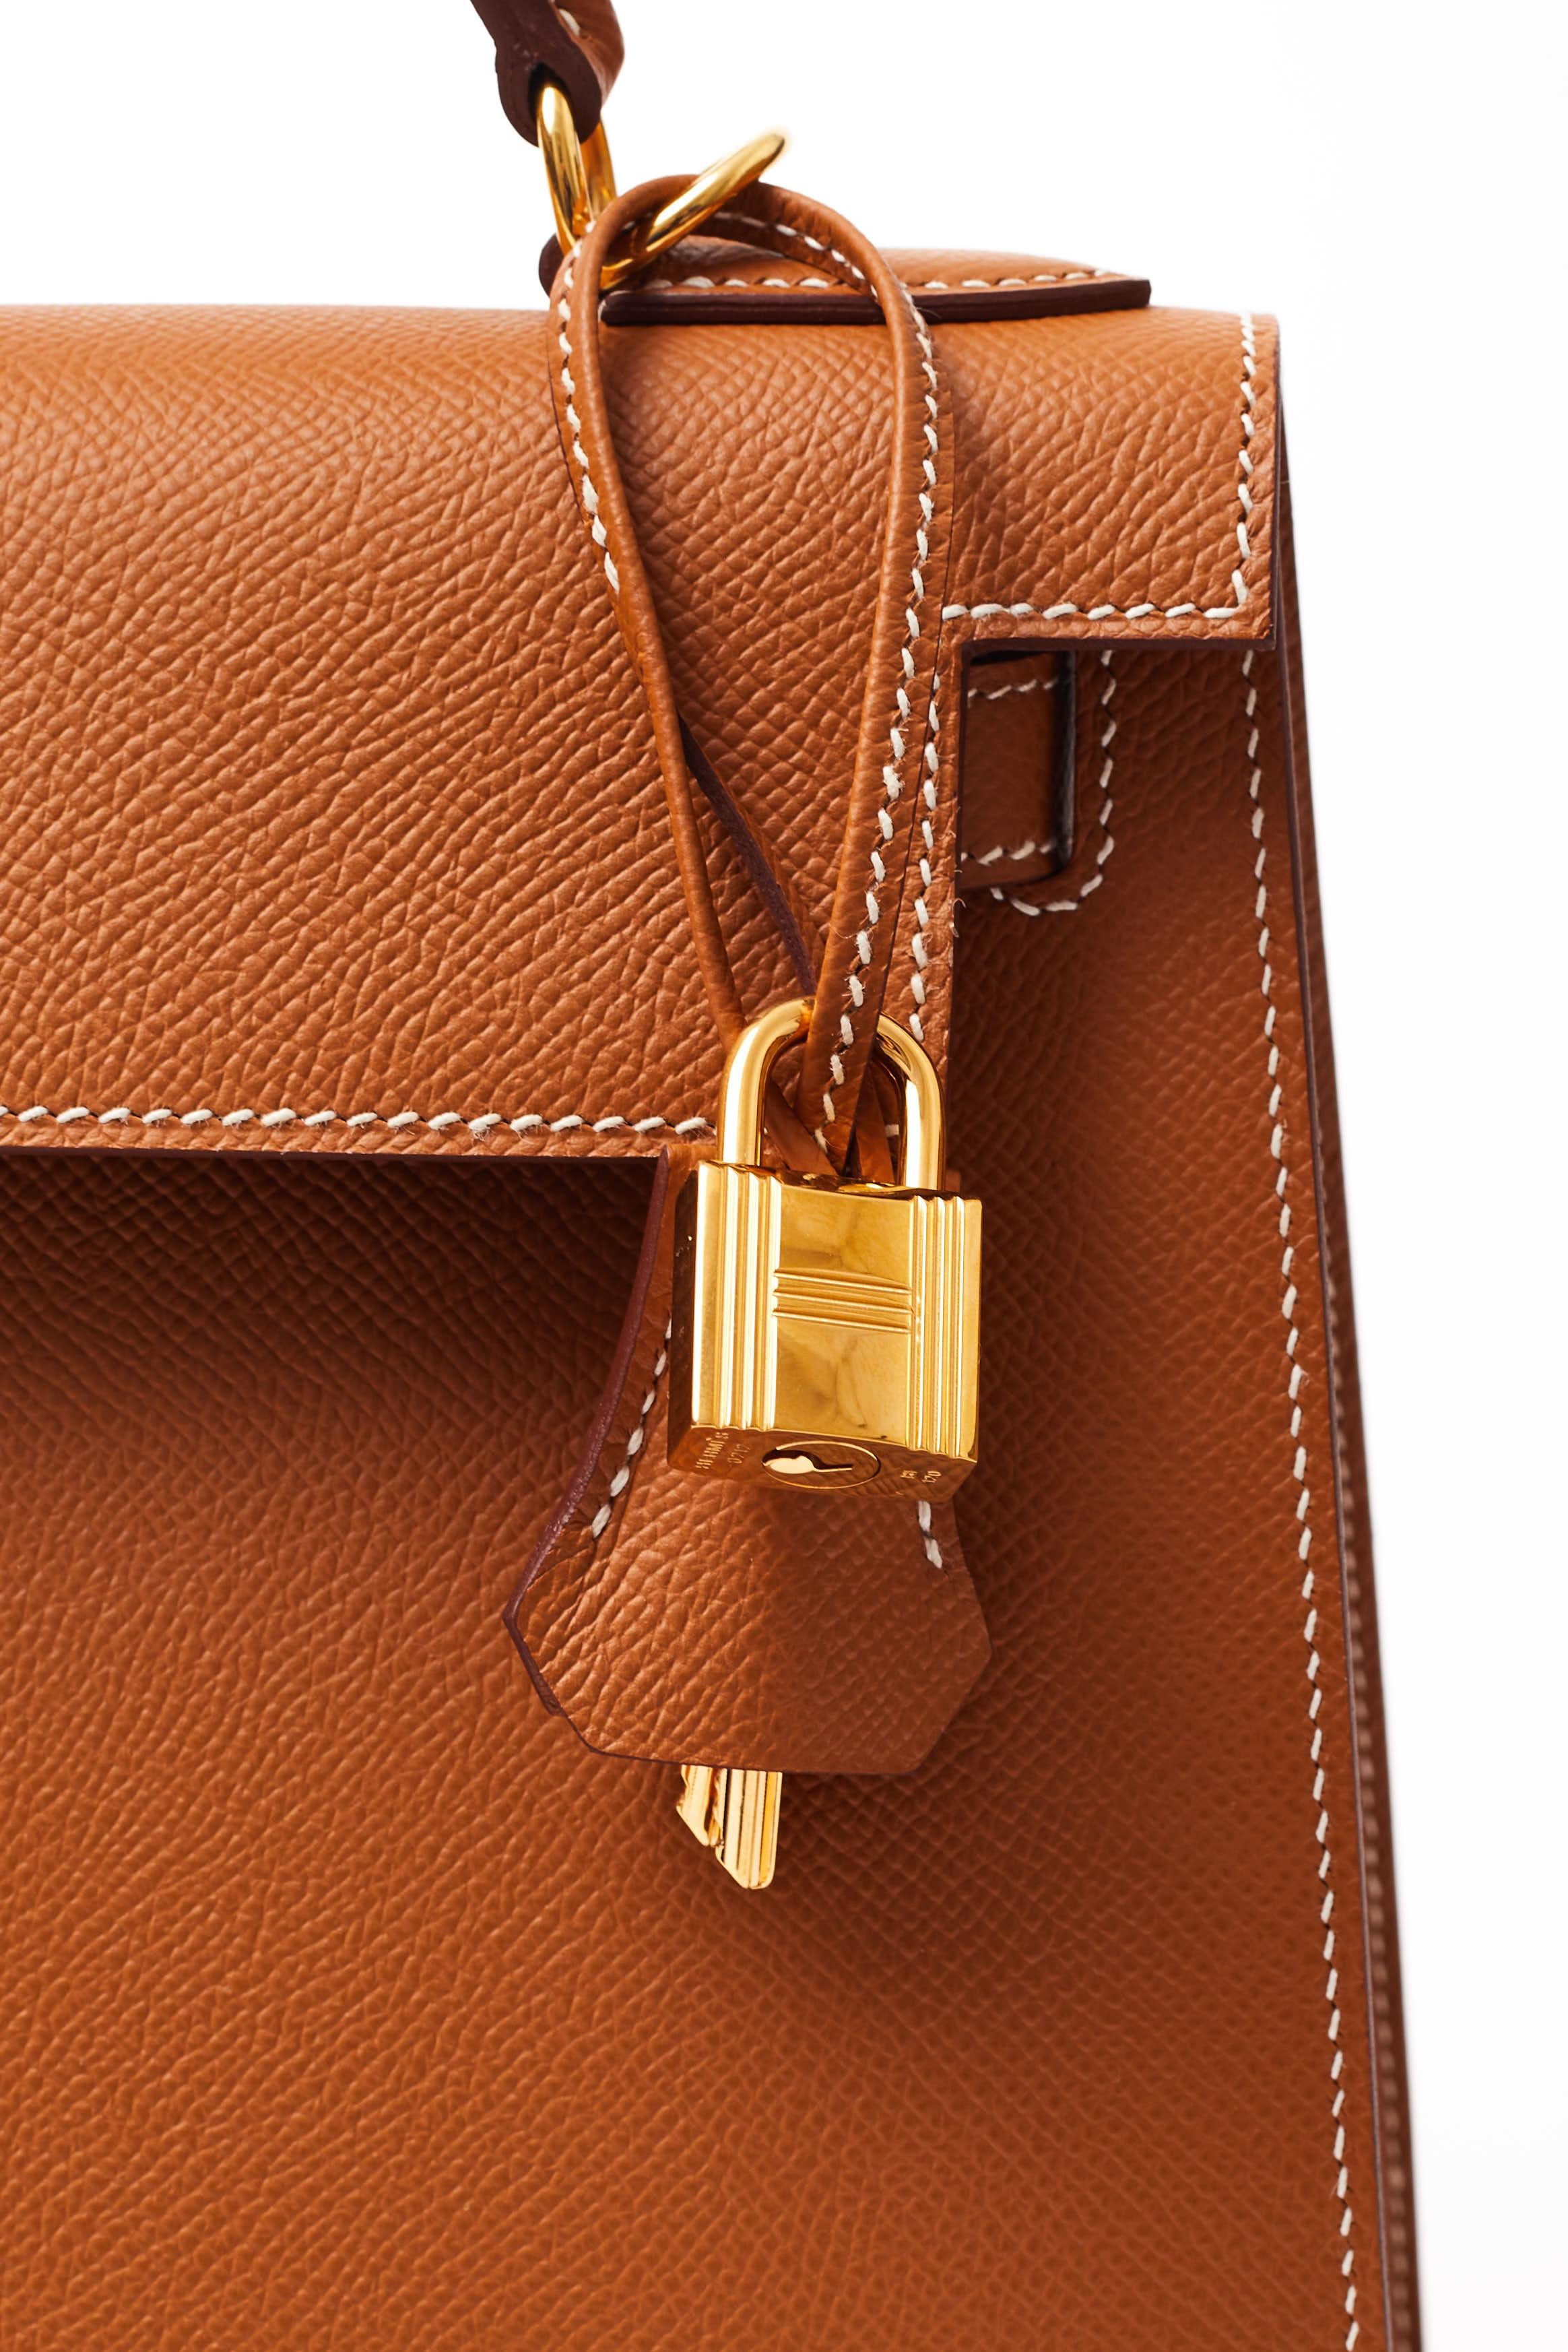 Hermès Paris 2019 Kelly 28 Gold Veau Epsom leather Gold hardware +authentication For Sale 6